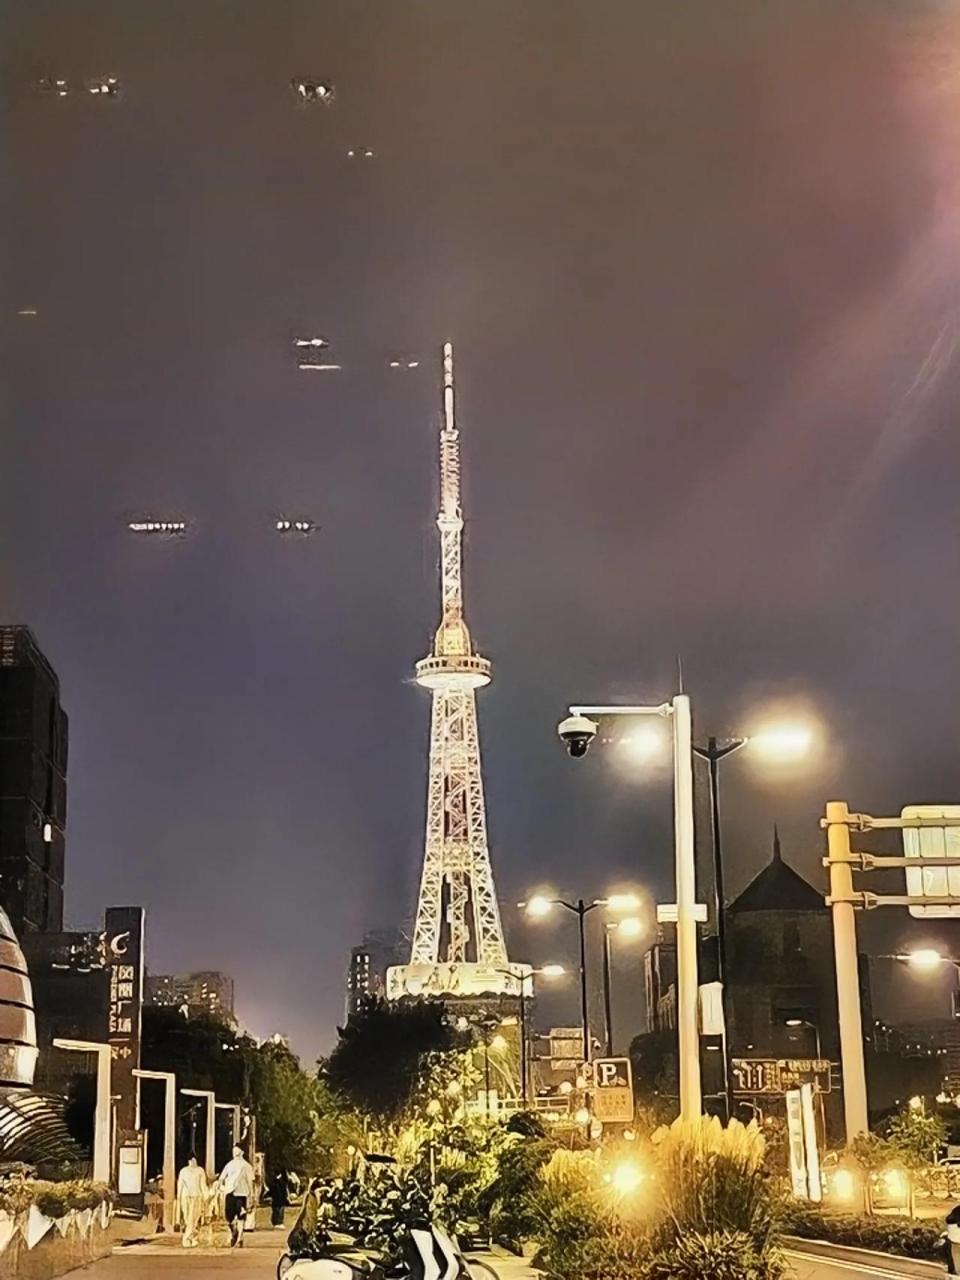 东吴塔,它是苏州南城埃菲尔铁塔,不过现在只剩下灯光了,早已人去塔空